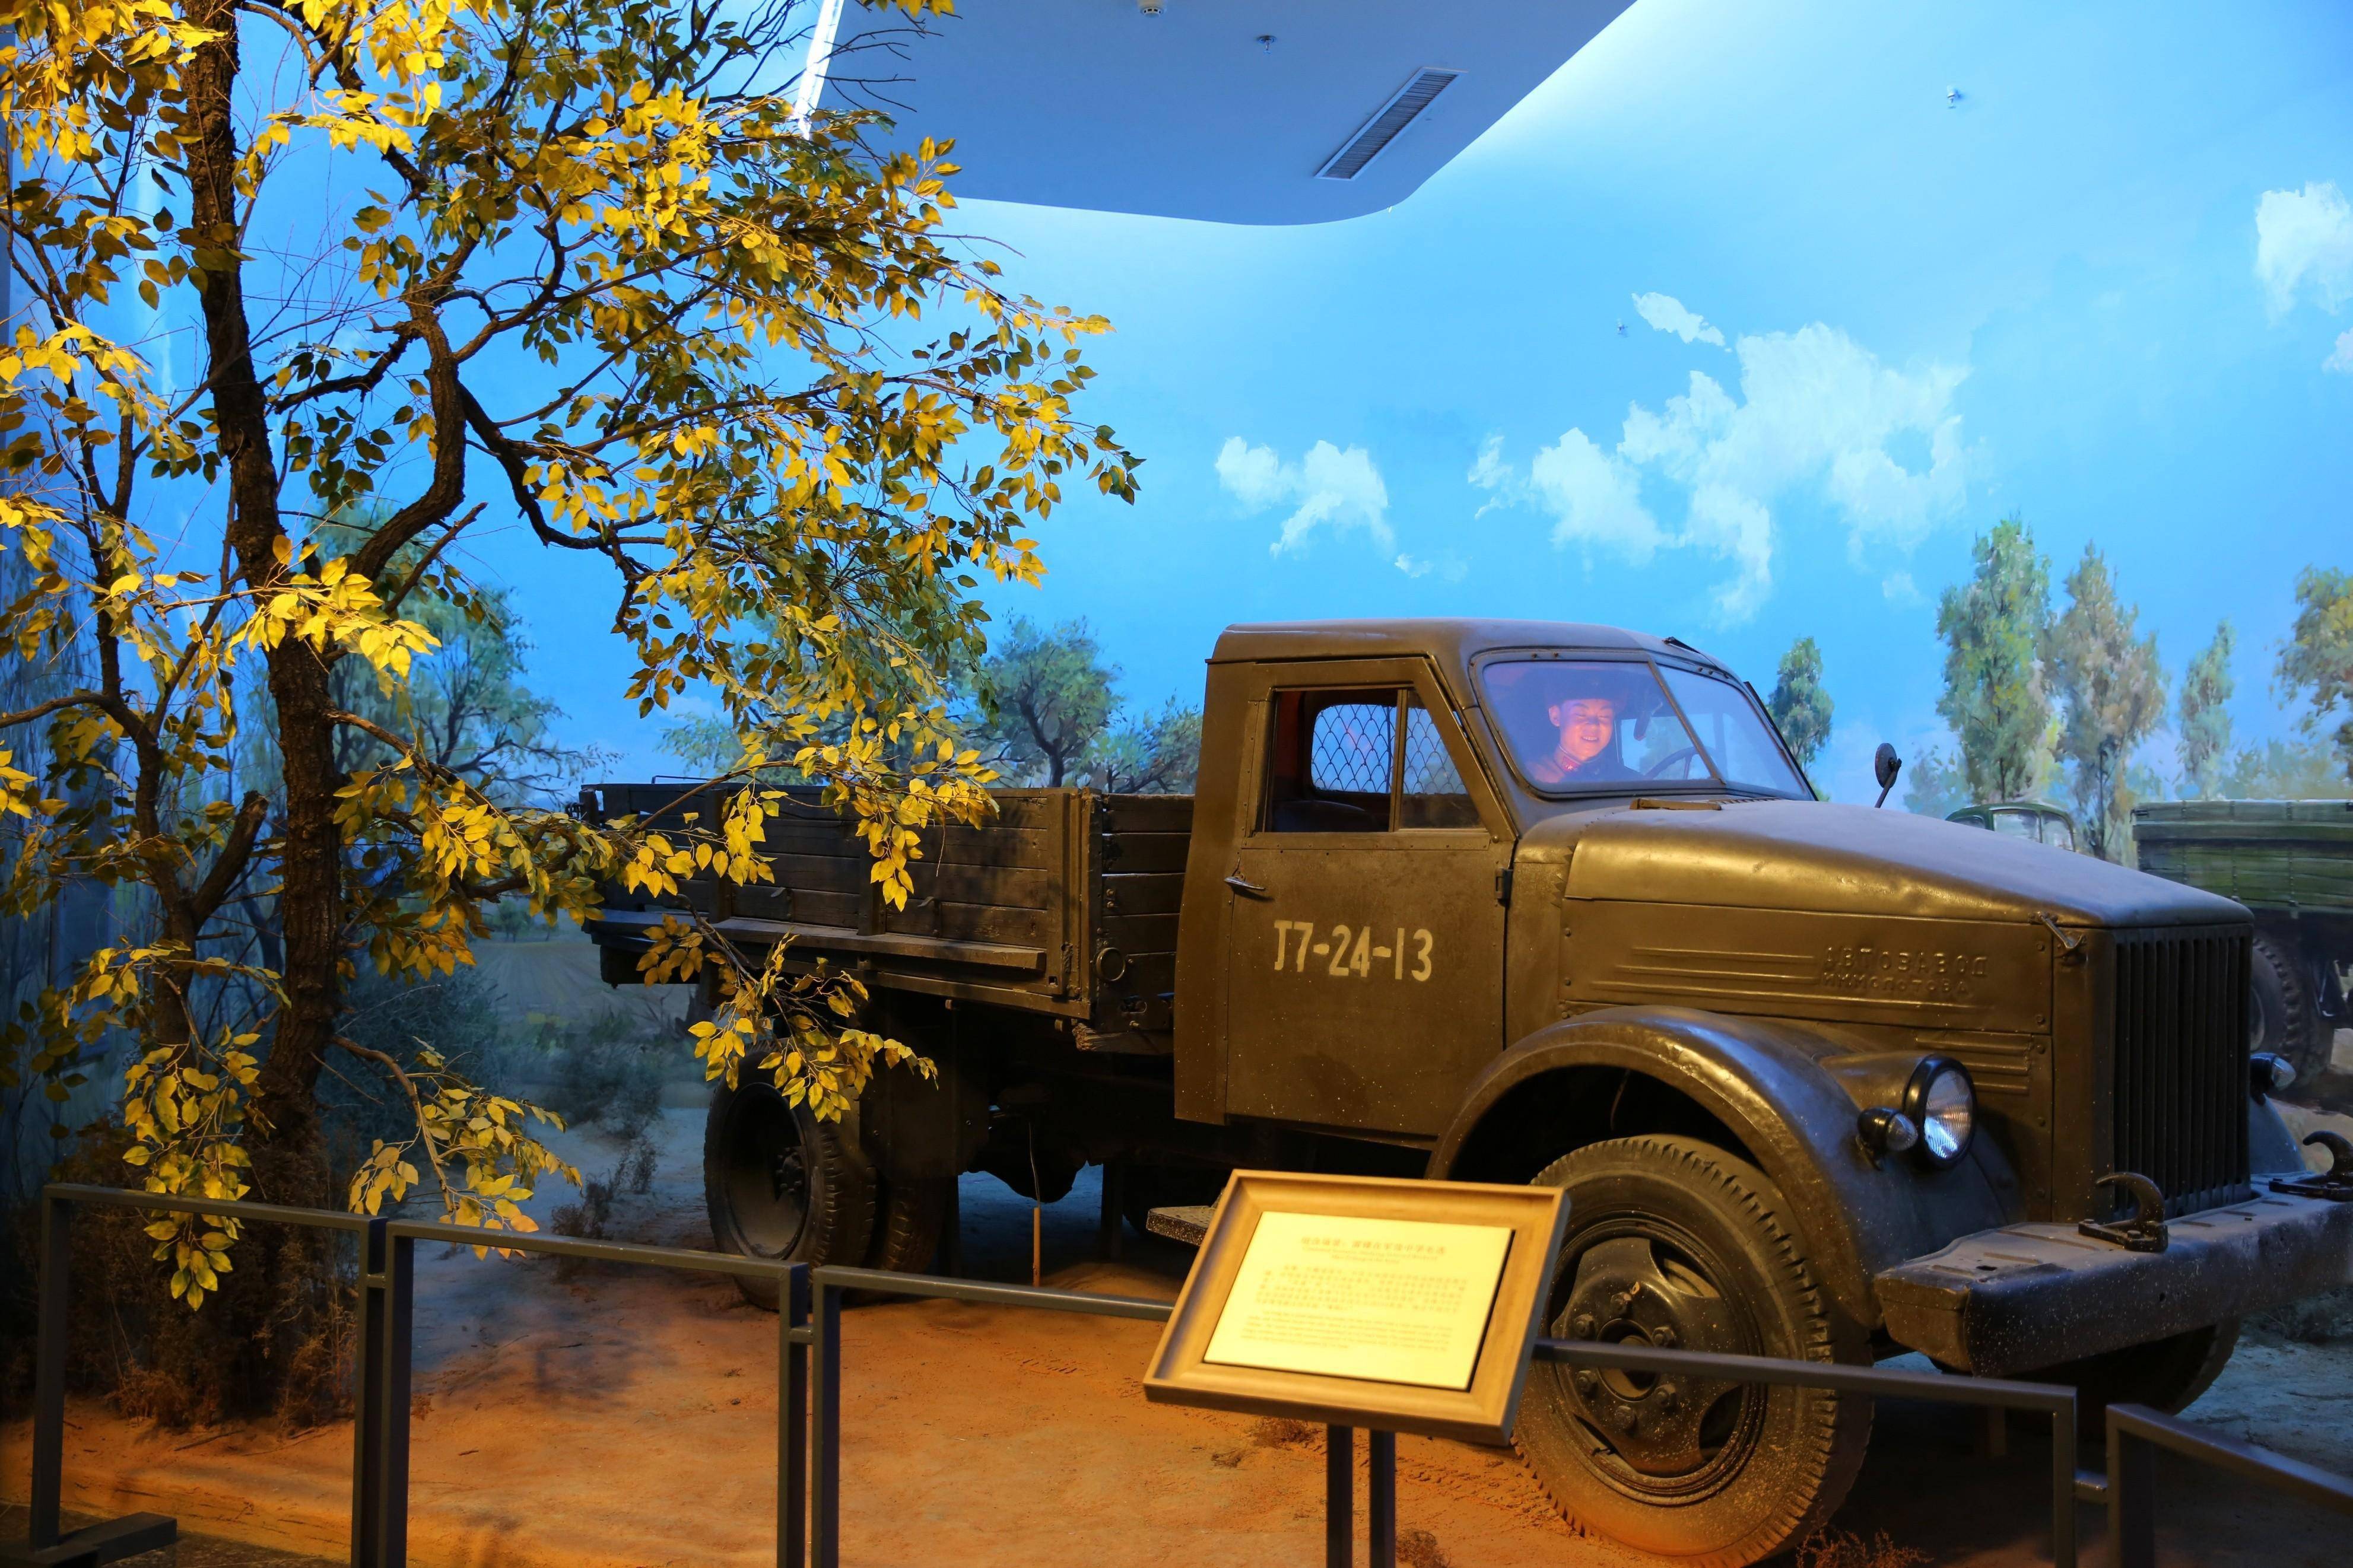 中有一件展品十分引人注目,它就是雷锋曾经驾驶过的苏联嘎斯51型卡车